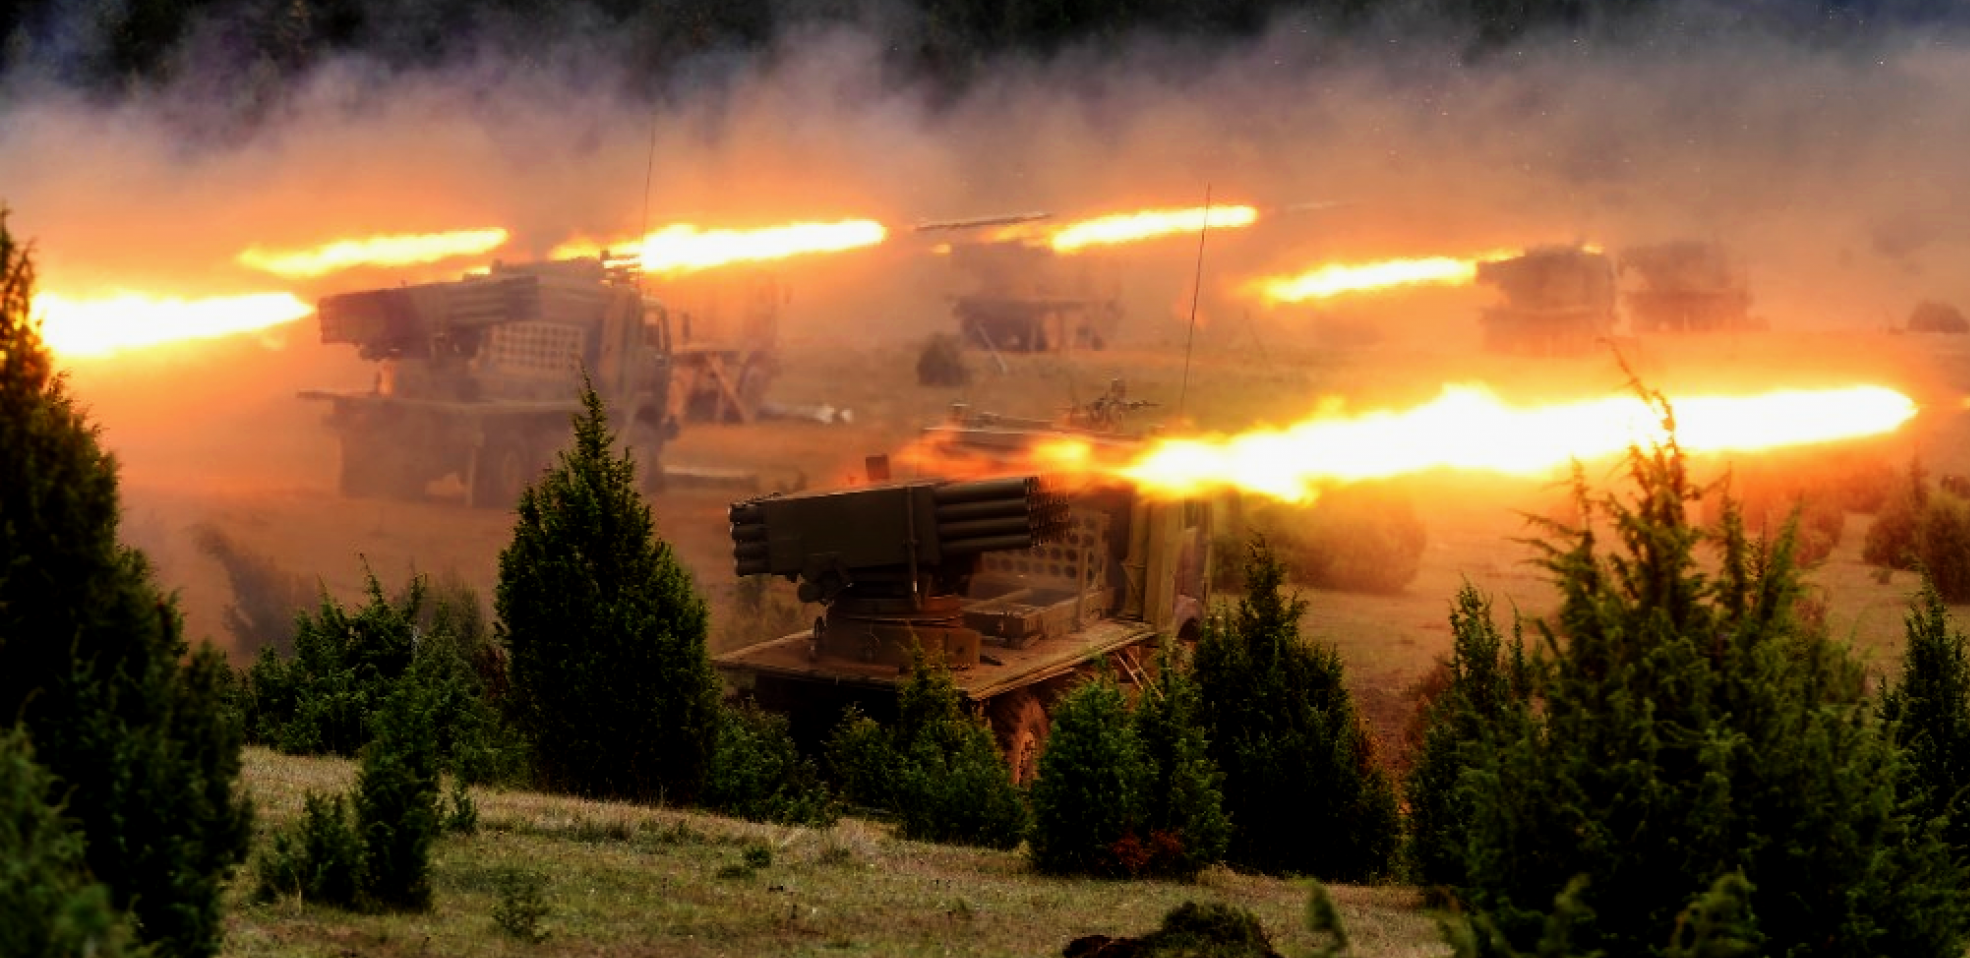 VOJSKA SRBIJE ZNAČAJNO UNAPREĐENA Počela obuka vojnika na digitalizovanom raketnom sistemu "oganj" (FOTO)